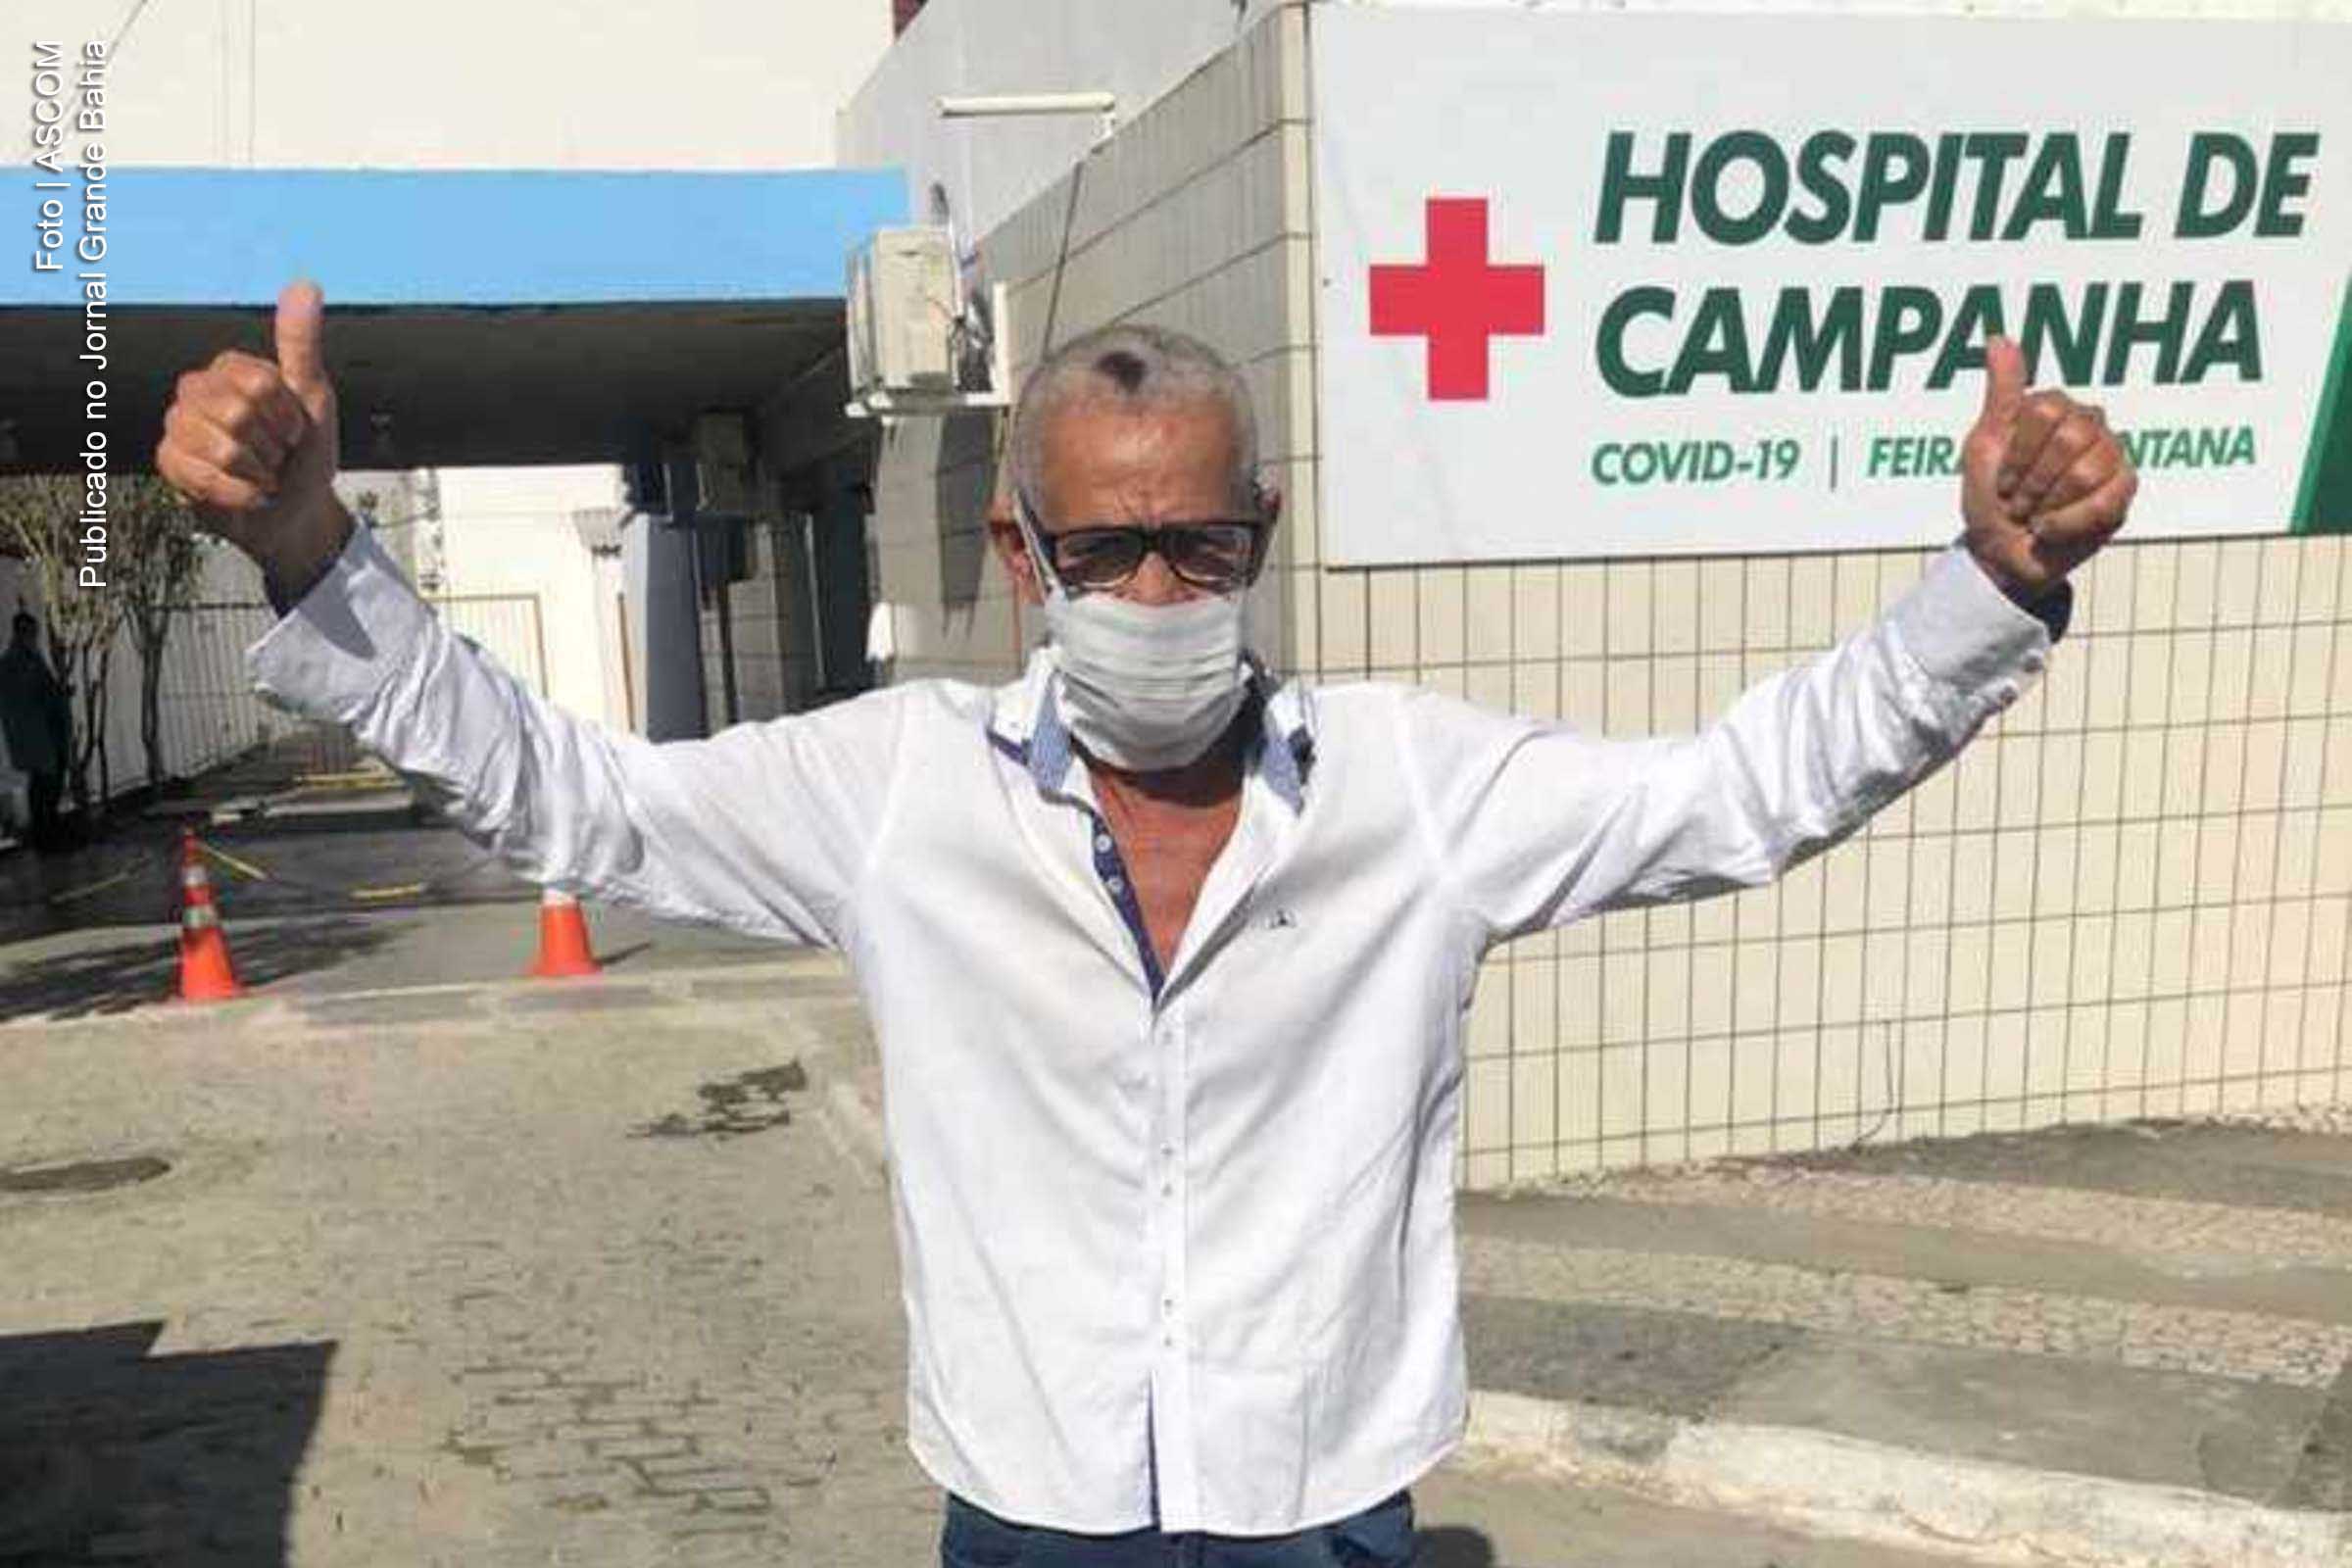 Valdemir dos Santos, 61 anos, recebeu alta do Hospital de Campanha de Feira de Santana.